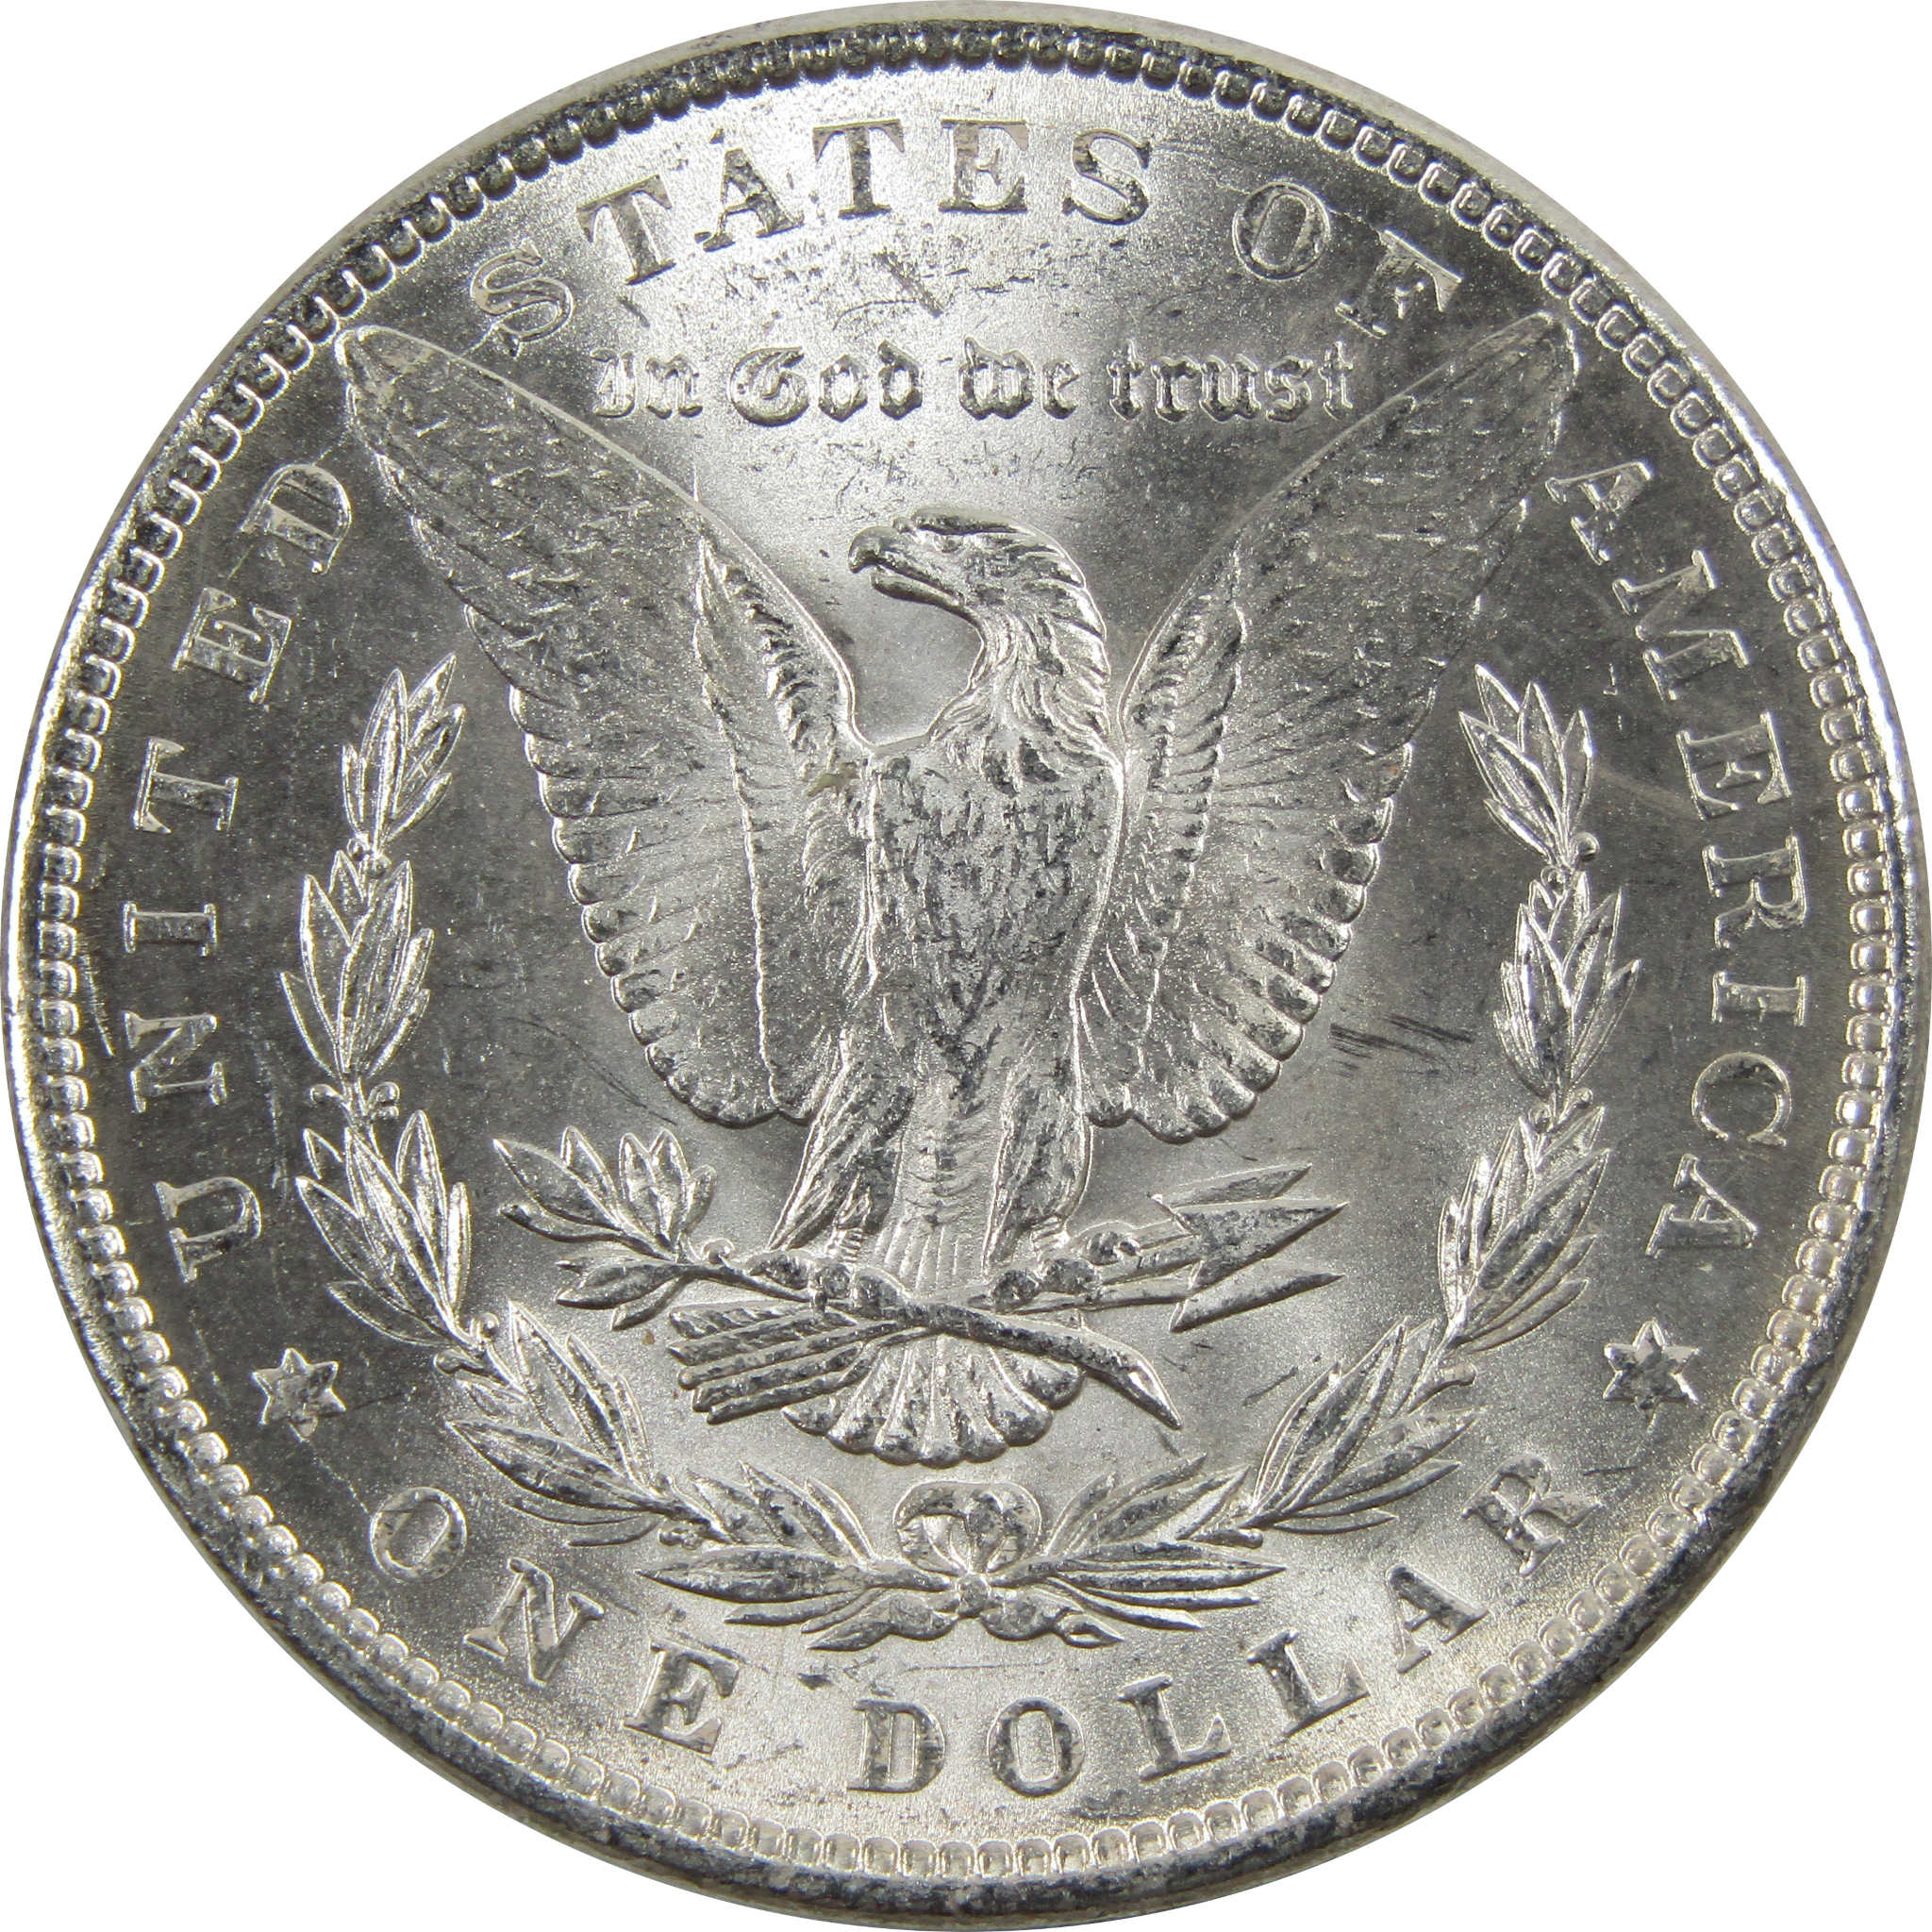 1883 Morgan Dollar BU Uncirculated 90% Silver $1 Coin SKU:I5168 - Morgan coin - Morgan silver dollar - Morgan silver dollar for sale - Profile Coins &amp; Collectibles